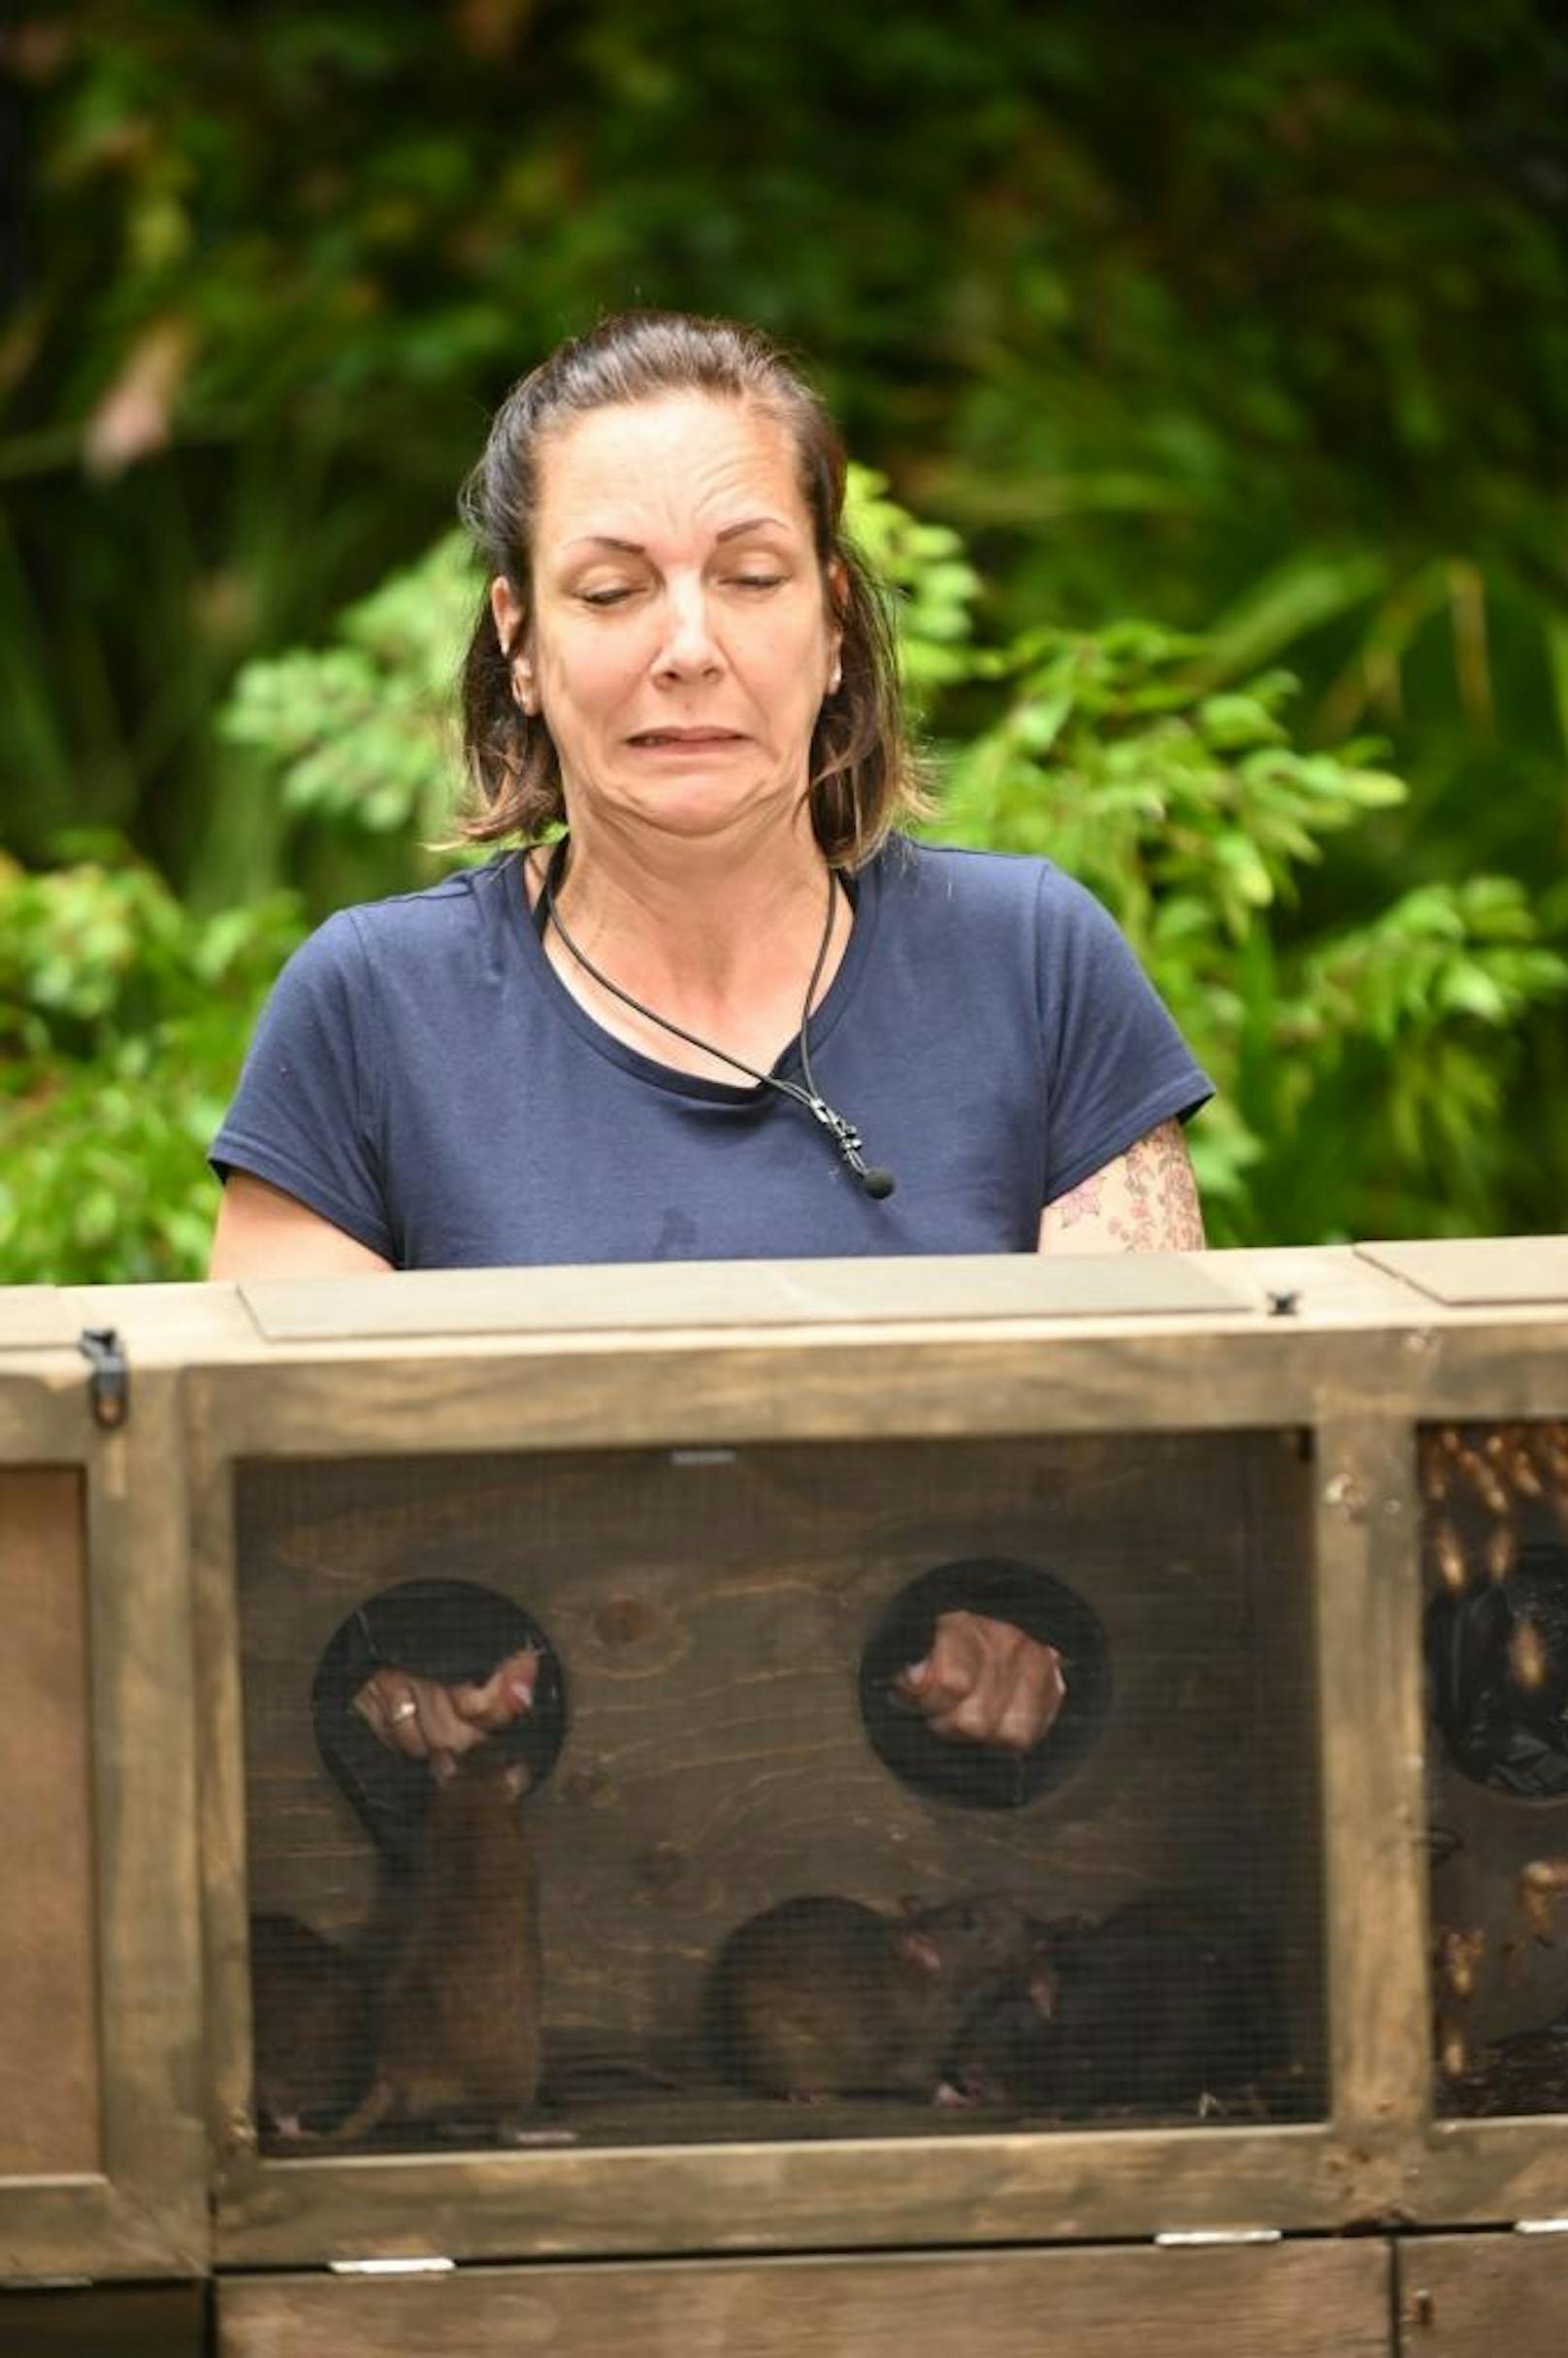 So schaut Danni Büchner drein, wenn sie es mit Ratten zu tun bekommt. Ihre Finger sind kaum in der Box. Was hat sich Danni eigentlich vorher vorgestellt, wie das Dschungelcamp wird? Niemanden außer sie überraschen die Ekelprüfungen.